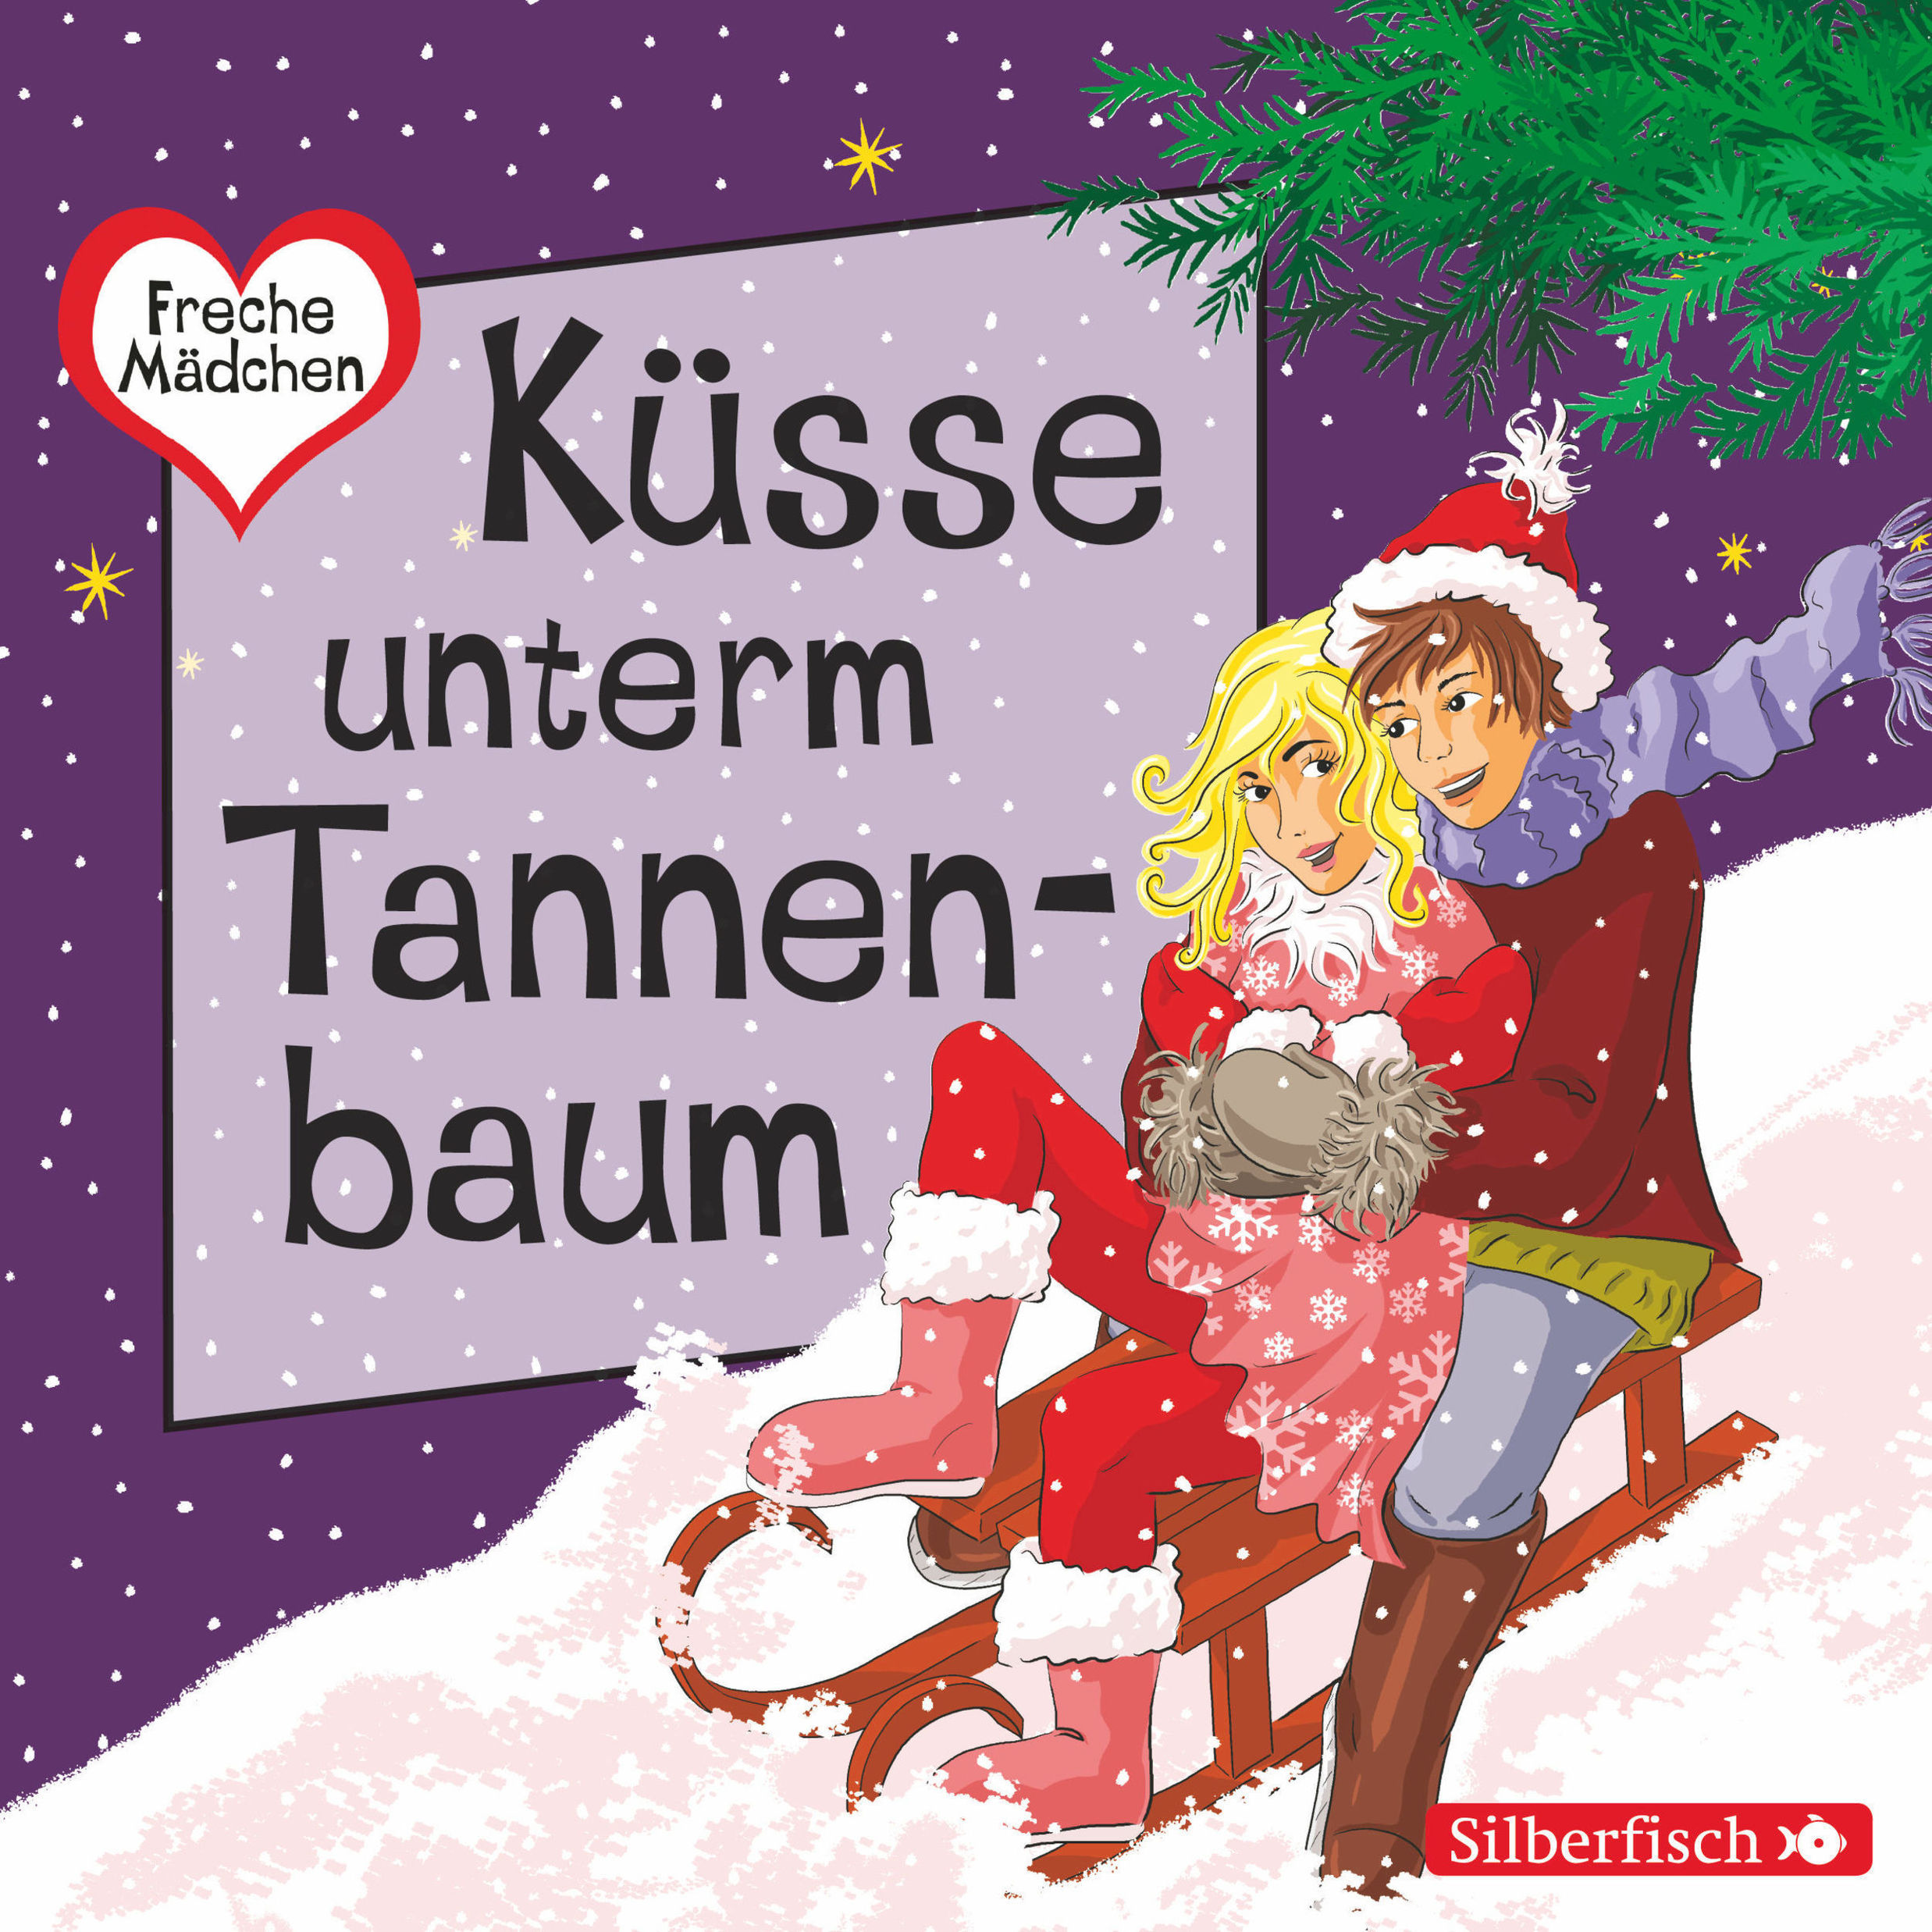 Freche Mädchen - Freche Mädchen: Küsse unterm Tannenbaum Hörbuch Download